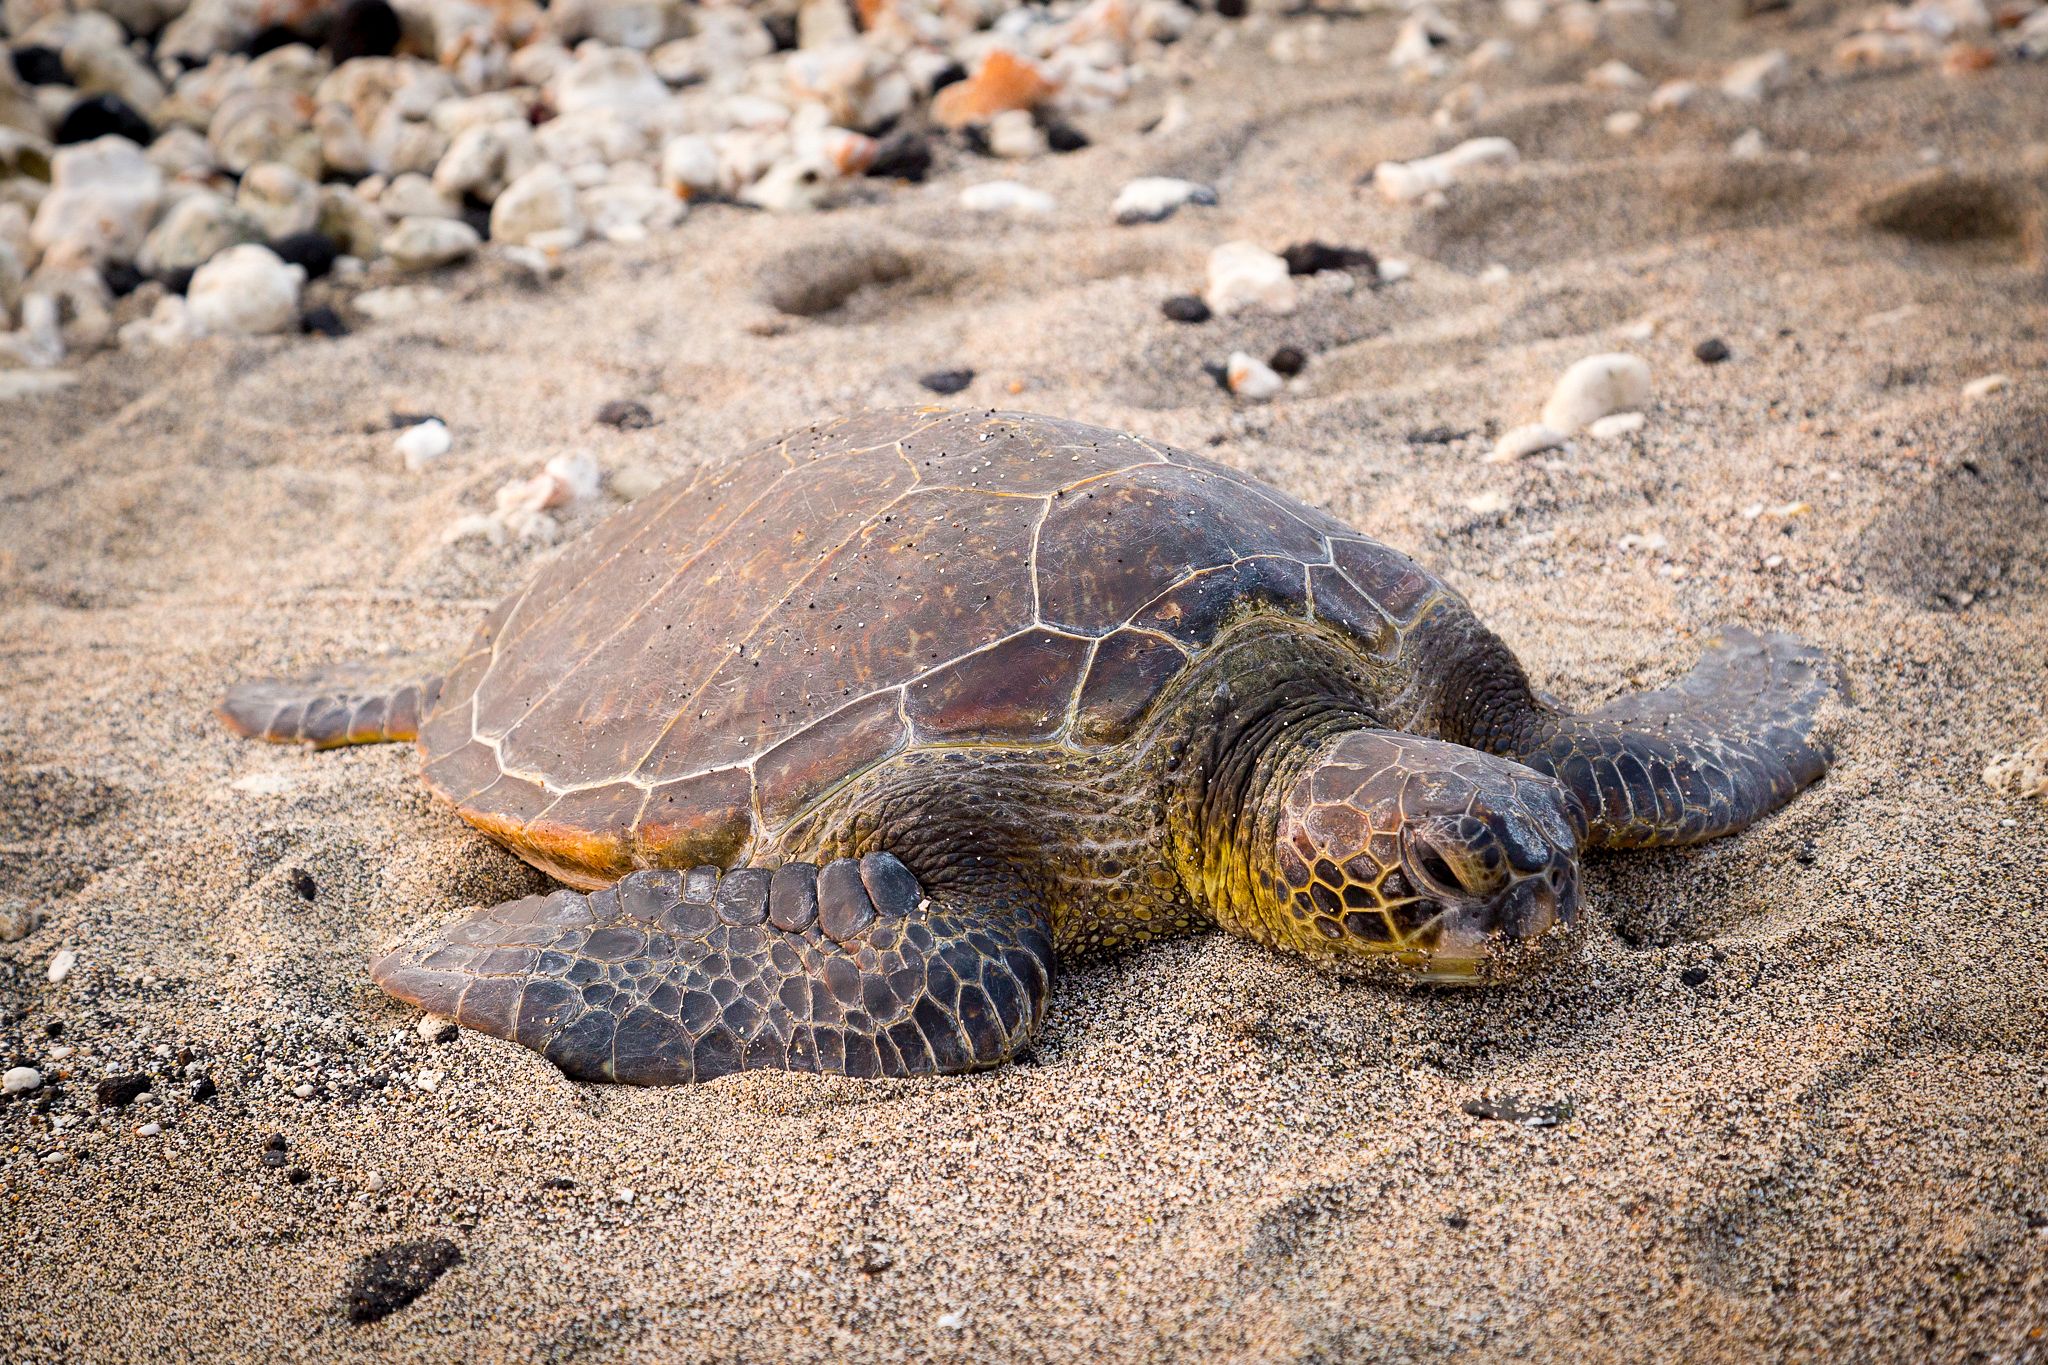 Turtle on sand.